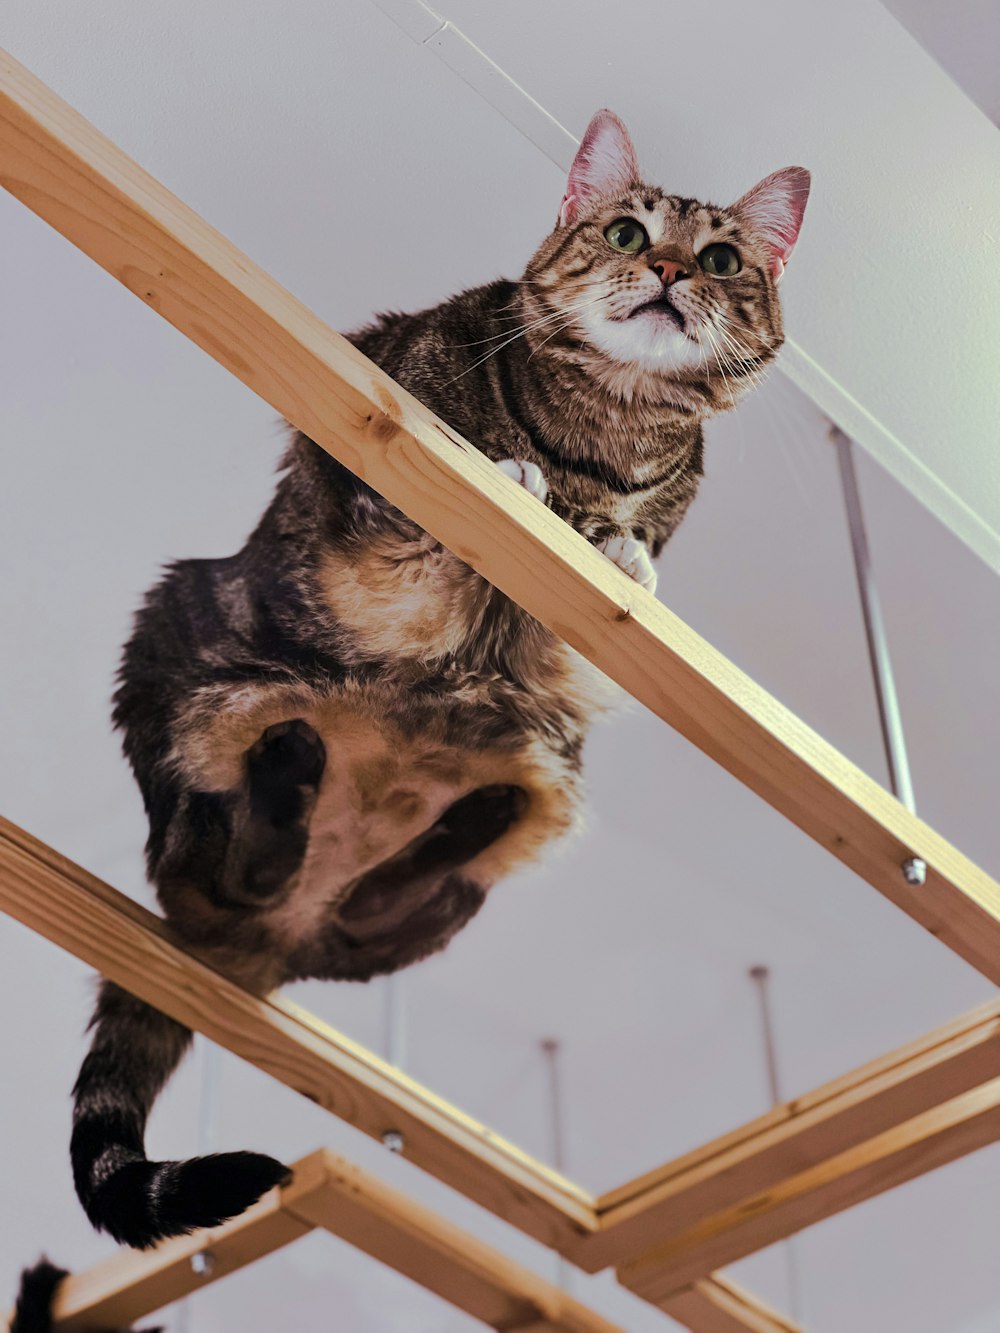 a cat sitting on a wood ledge